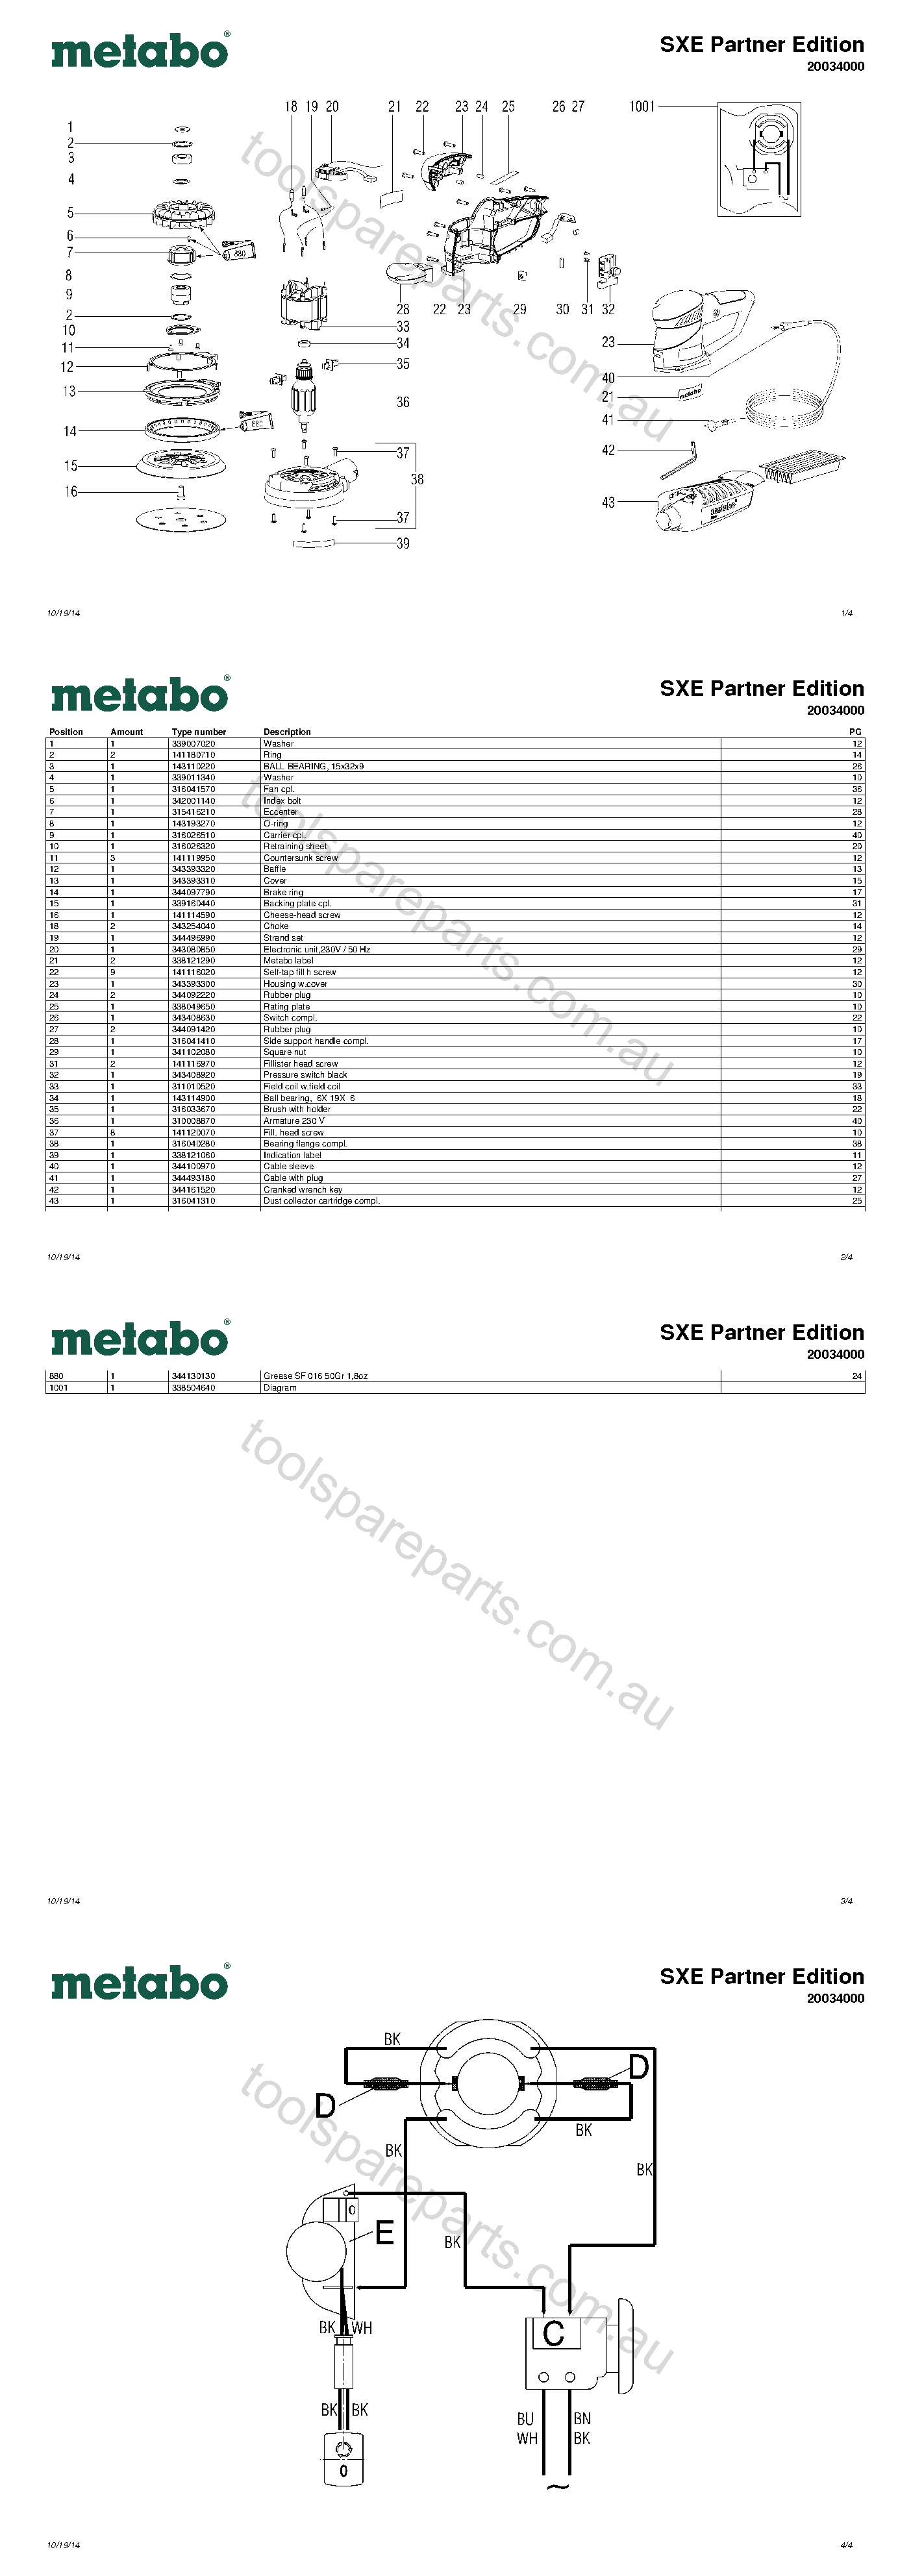 Metabo SXE Partner Edition 20034000  Diagram 1